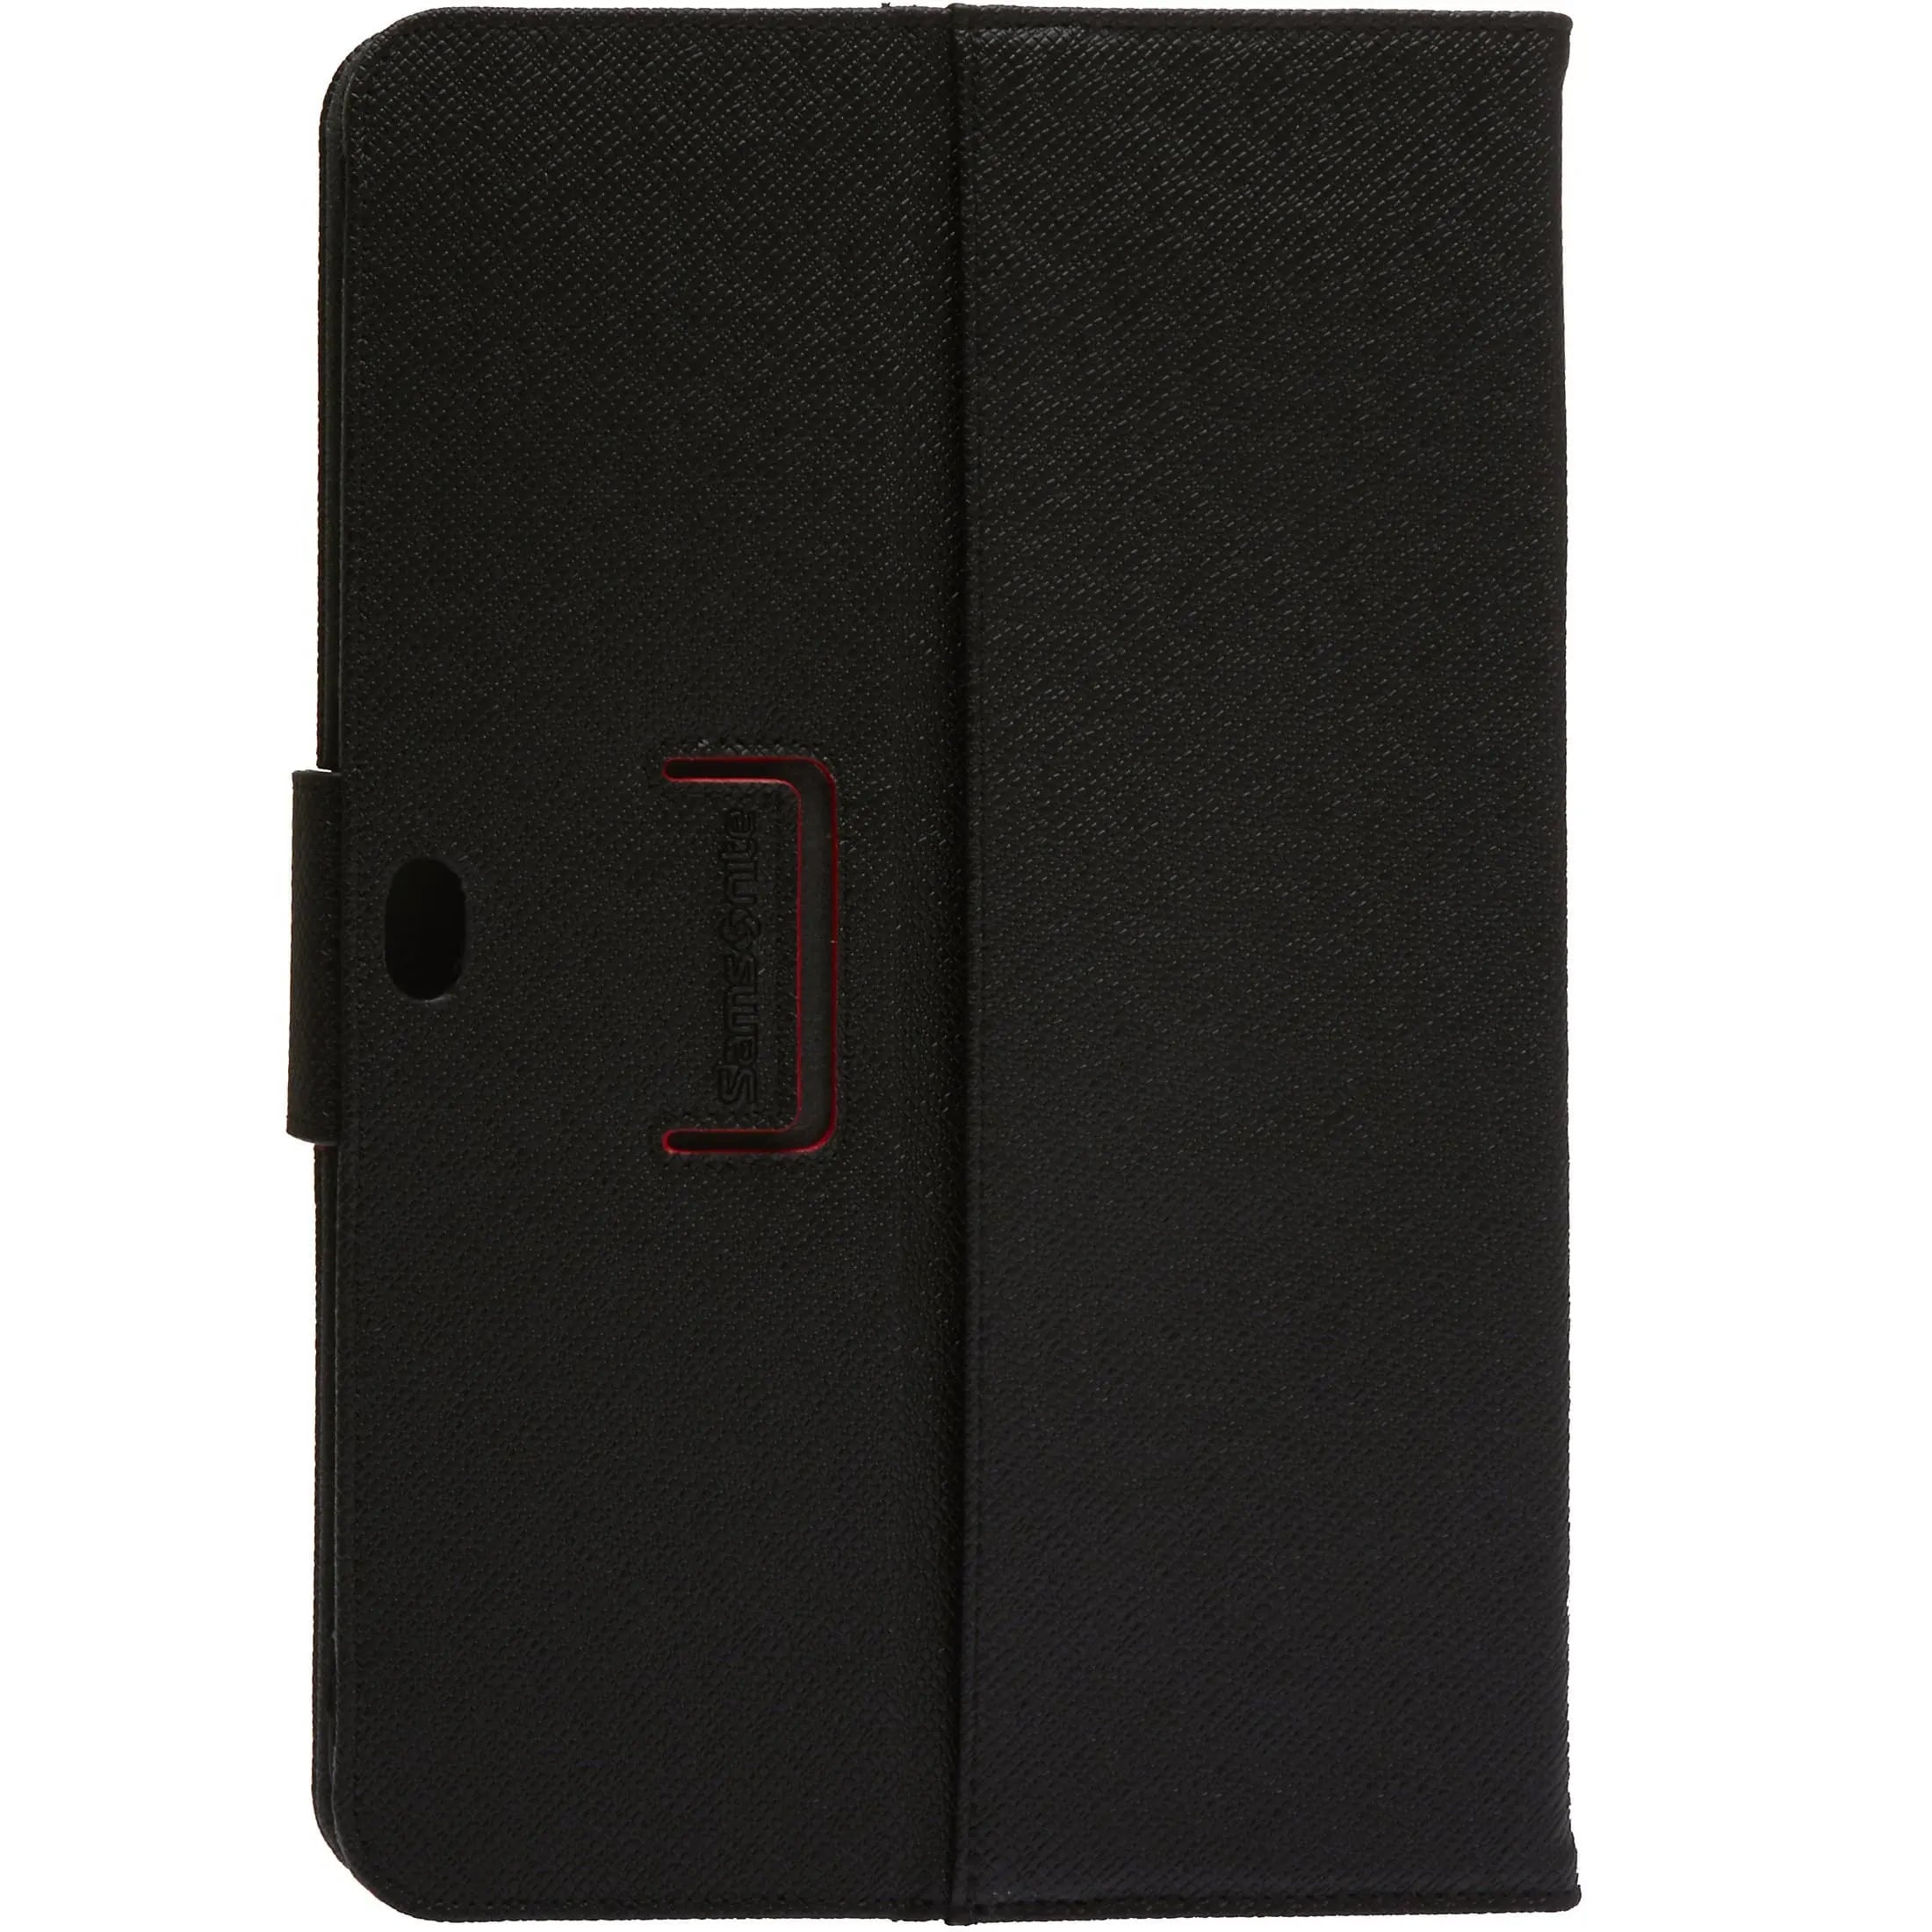 Samsonite Mobile Pro Leather Portofolio 10.1 étui pour tablette 26 cm - marron foncé